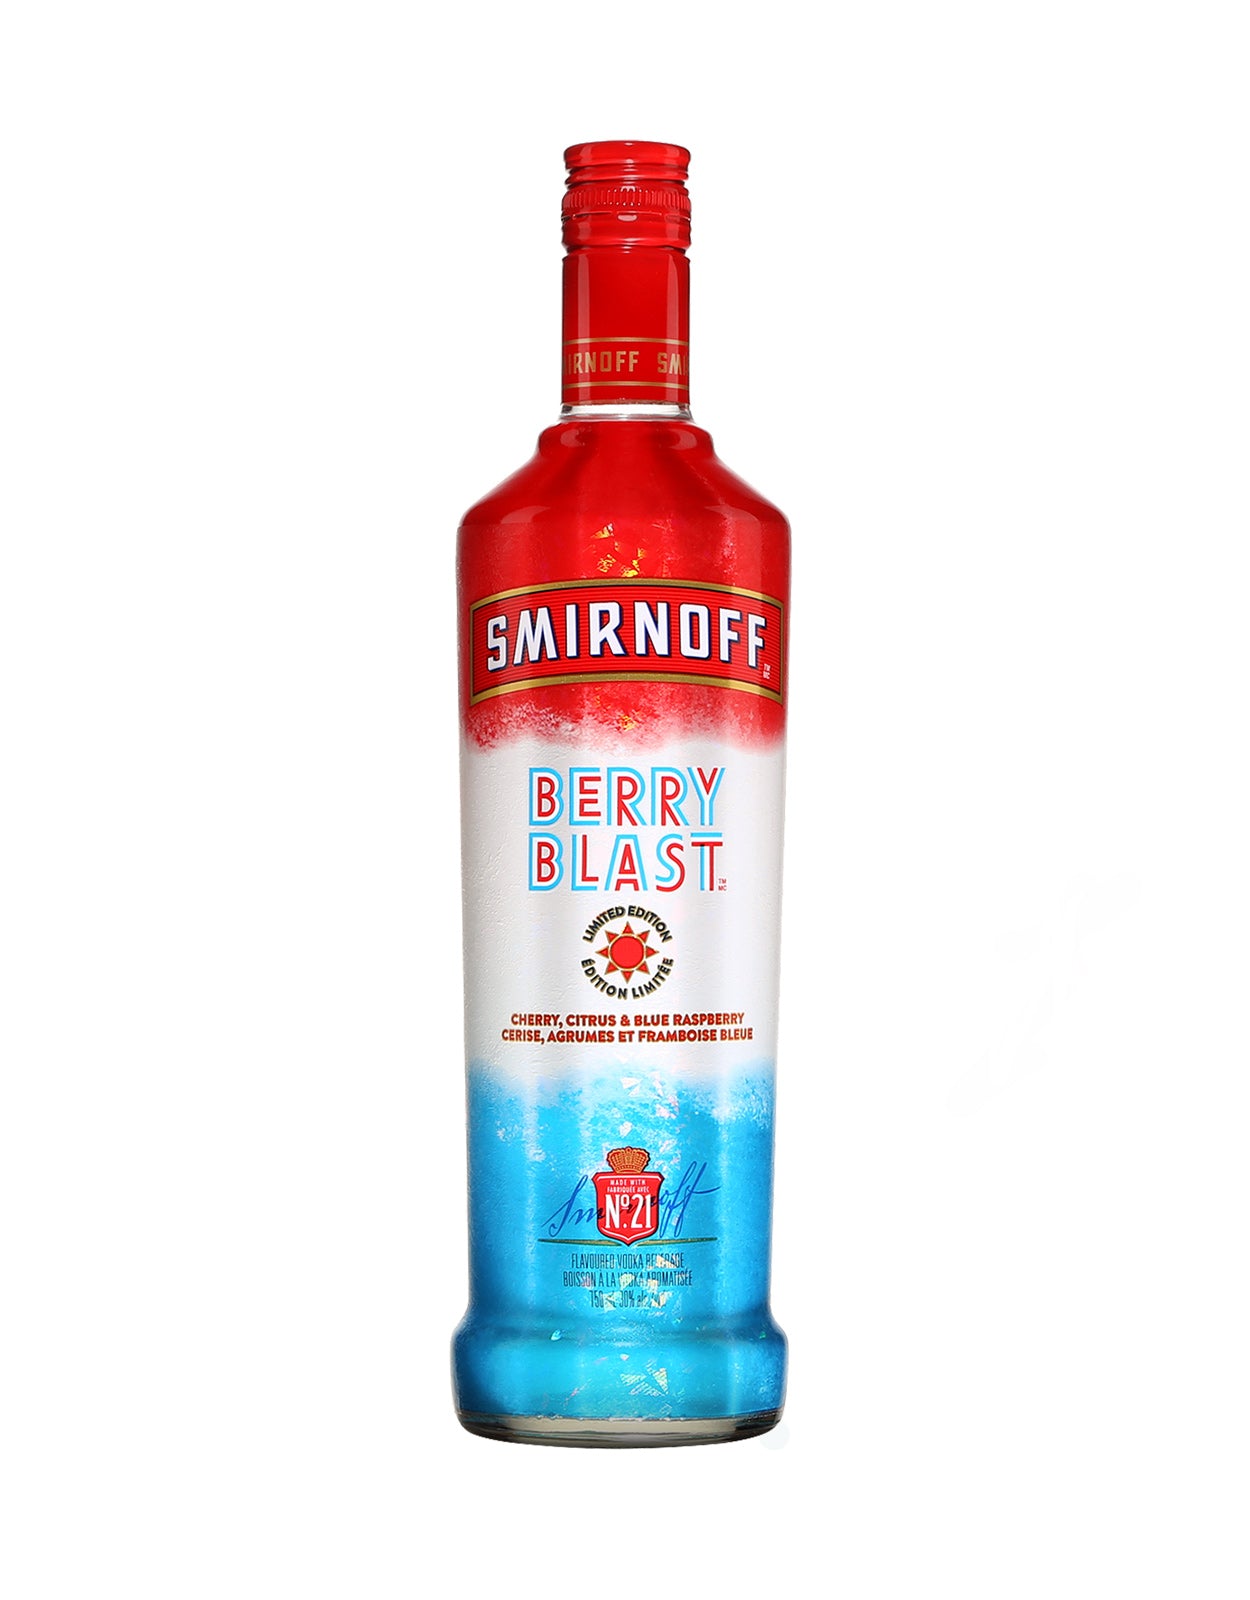 Smirnoff Berry Blast Vodka